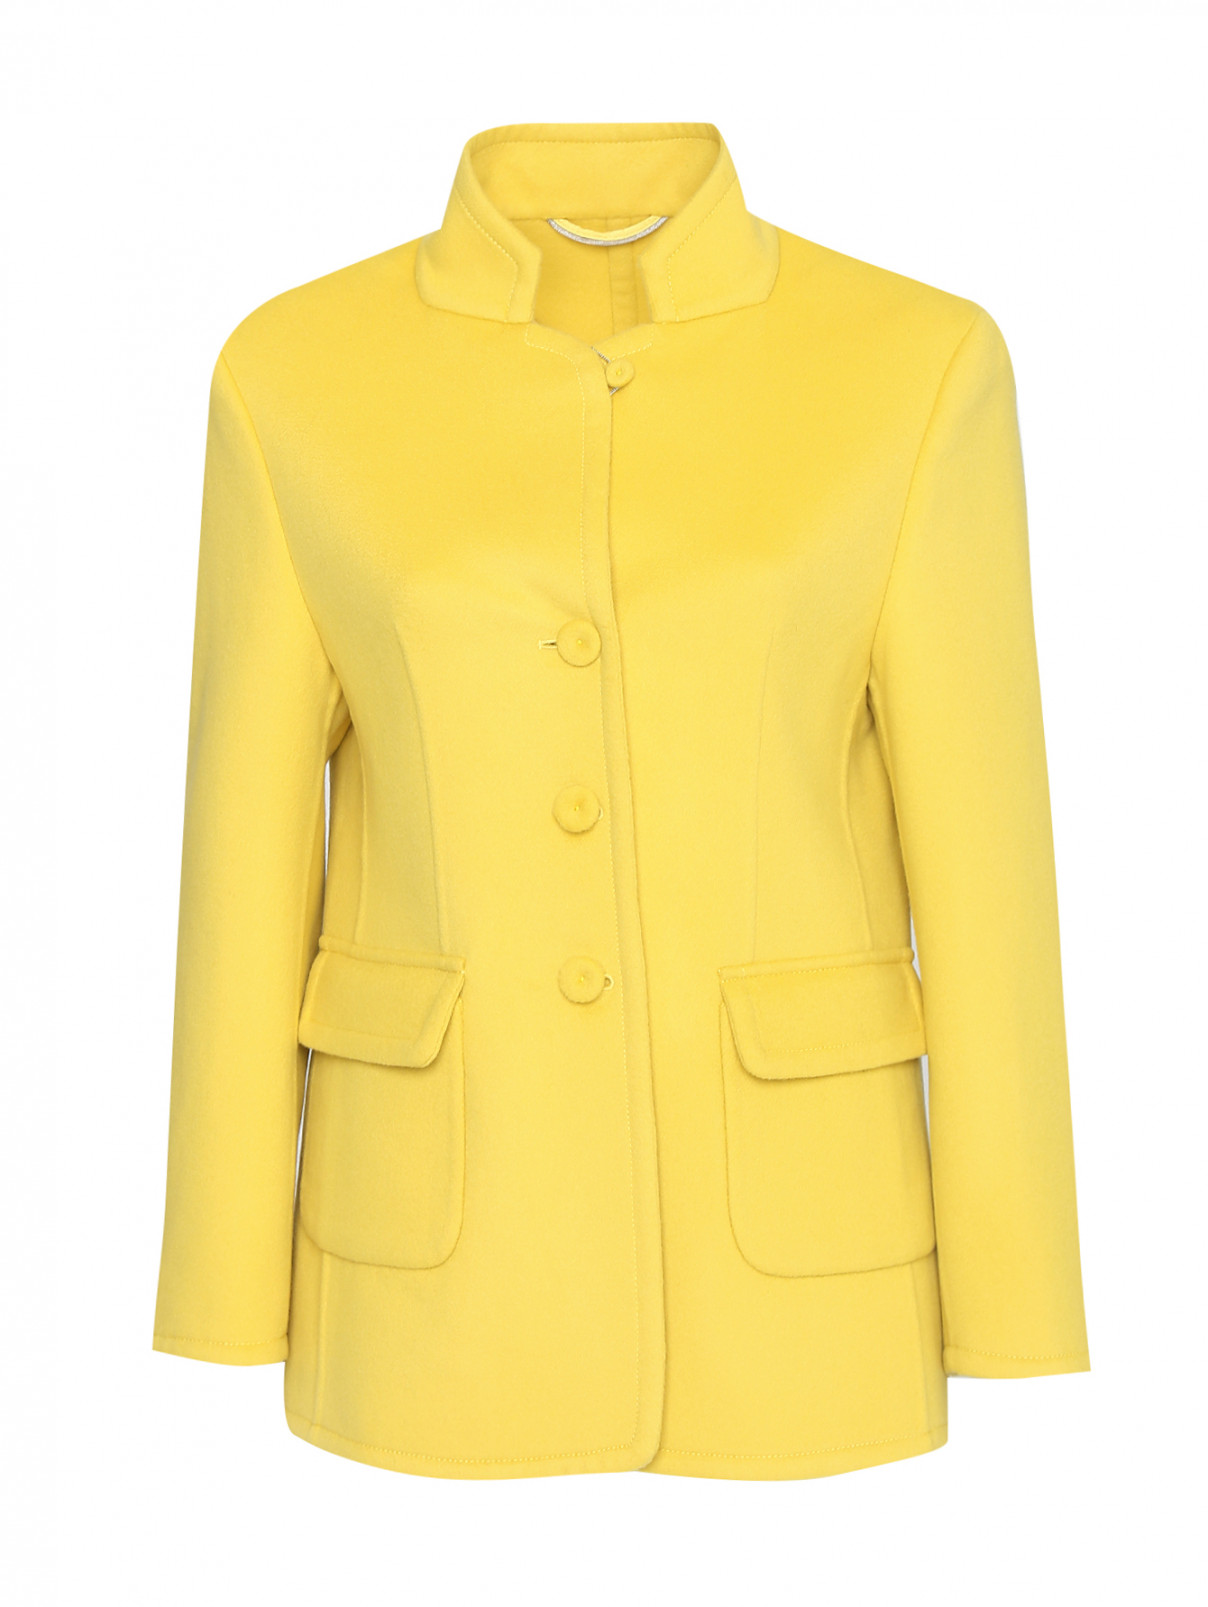 Полупальто из шерсти с накладными карманами Ermanno Scervino  –  Общий вид  – Цвет:  Желтый